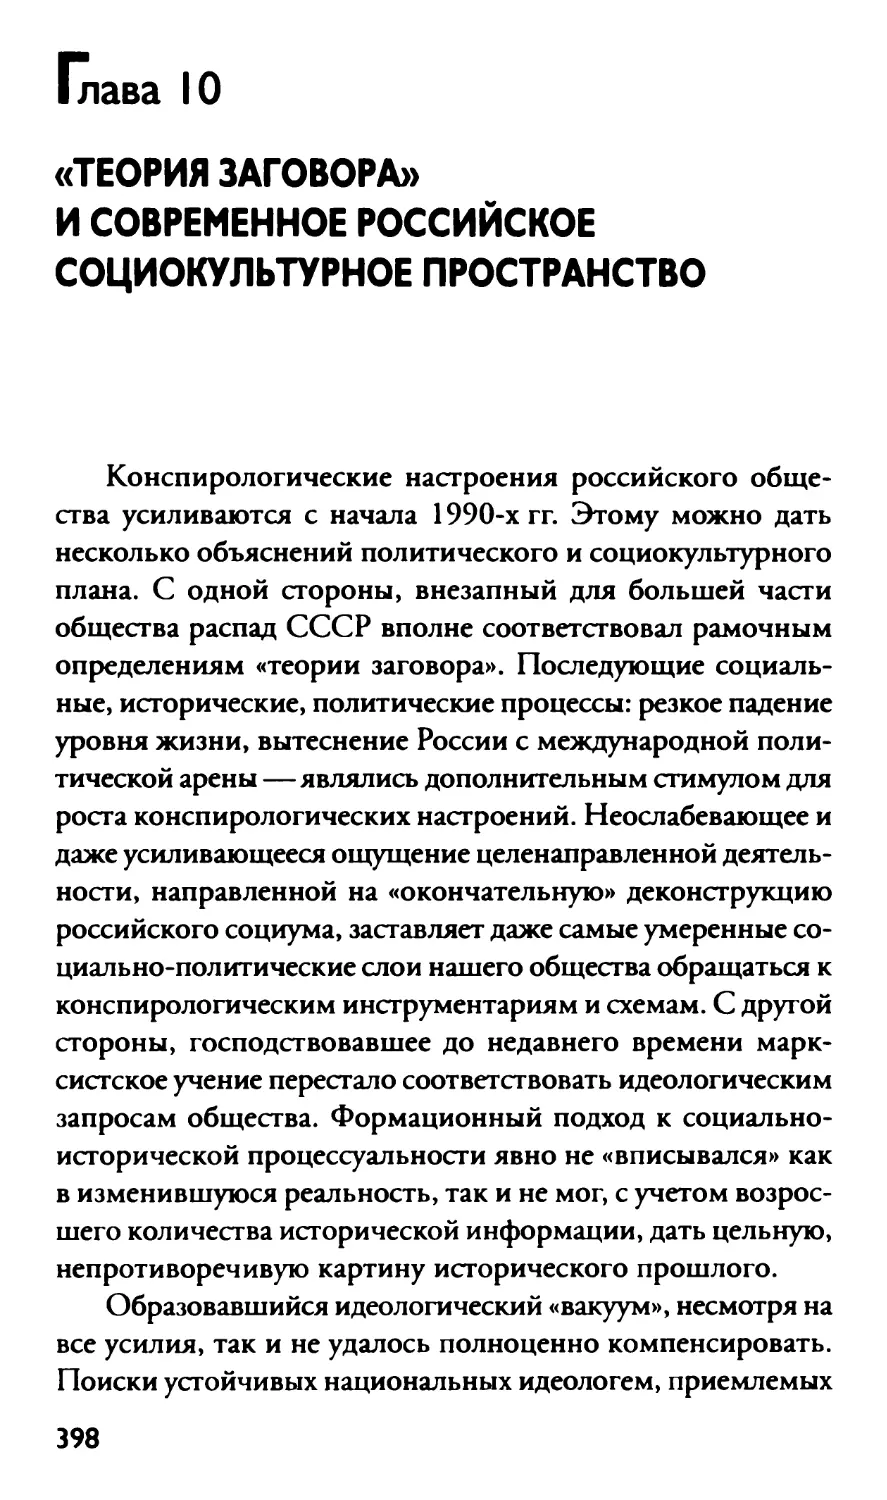 Глава 10 «Теория заговора» и современное российское социокультурное пространство